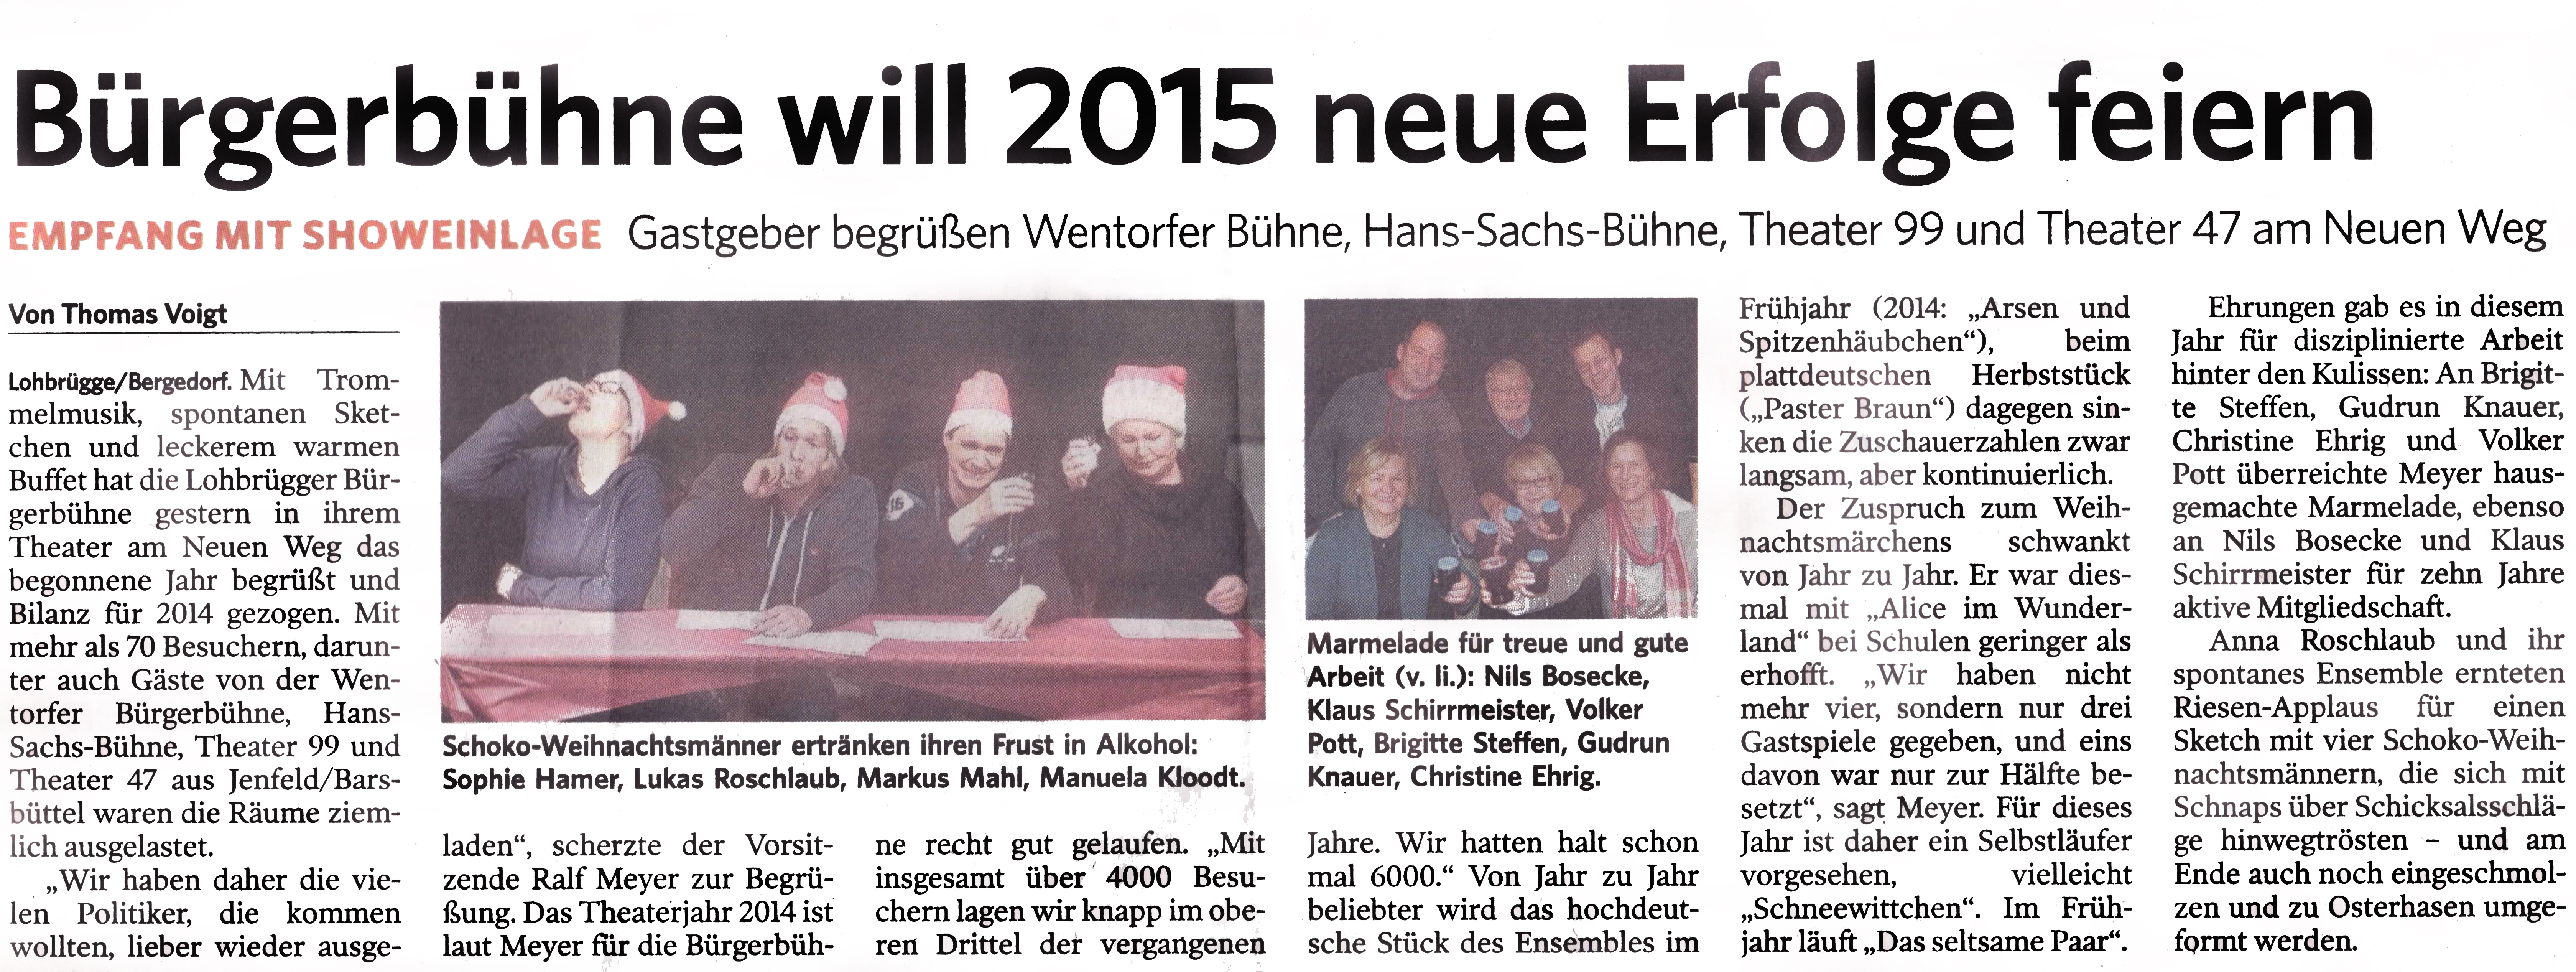 Neujahresempfang_LBB_2015_Bergedorfer_Zeitung